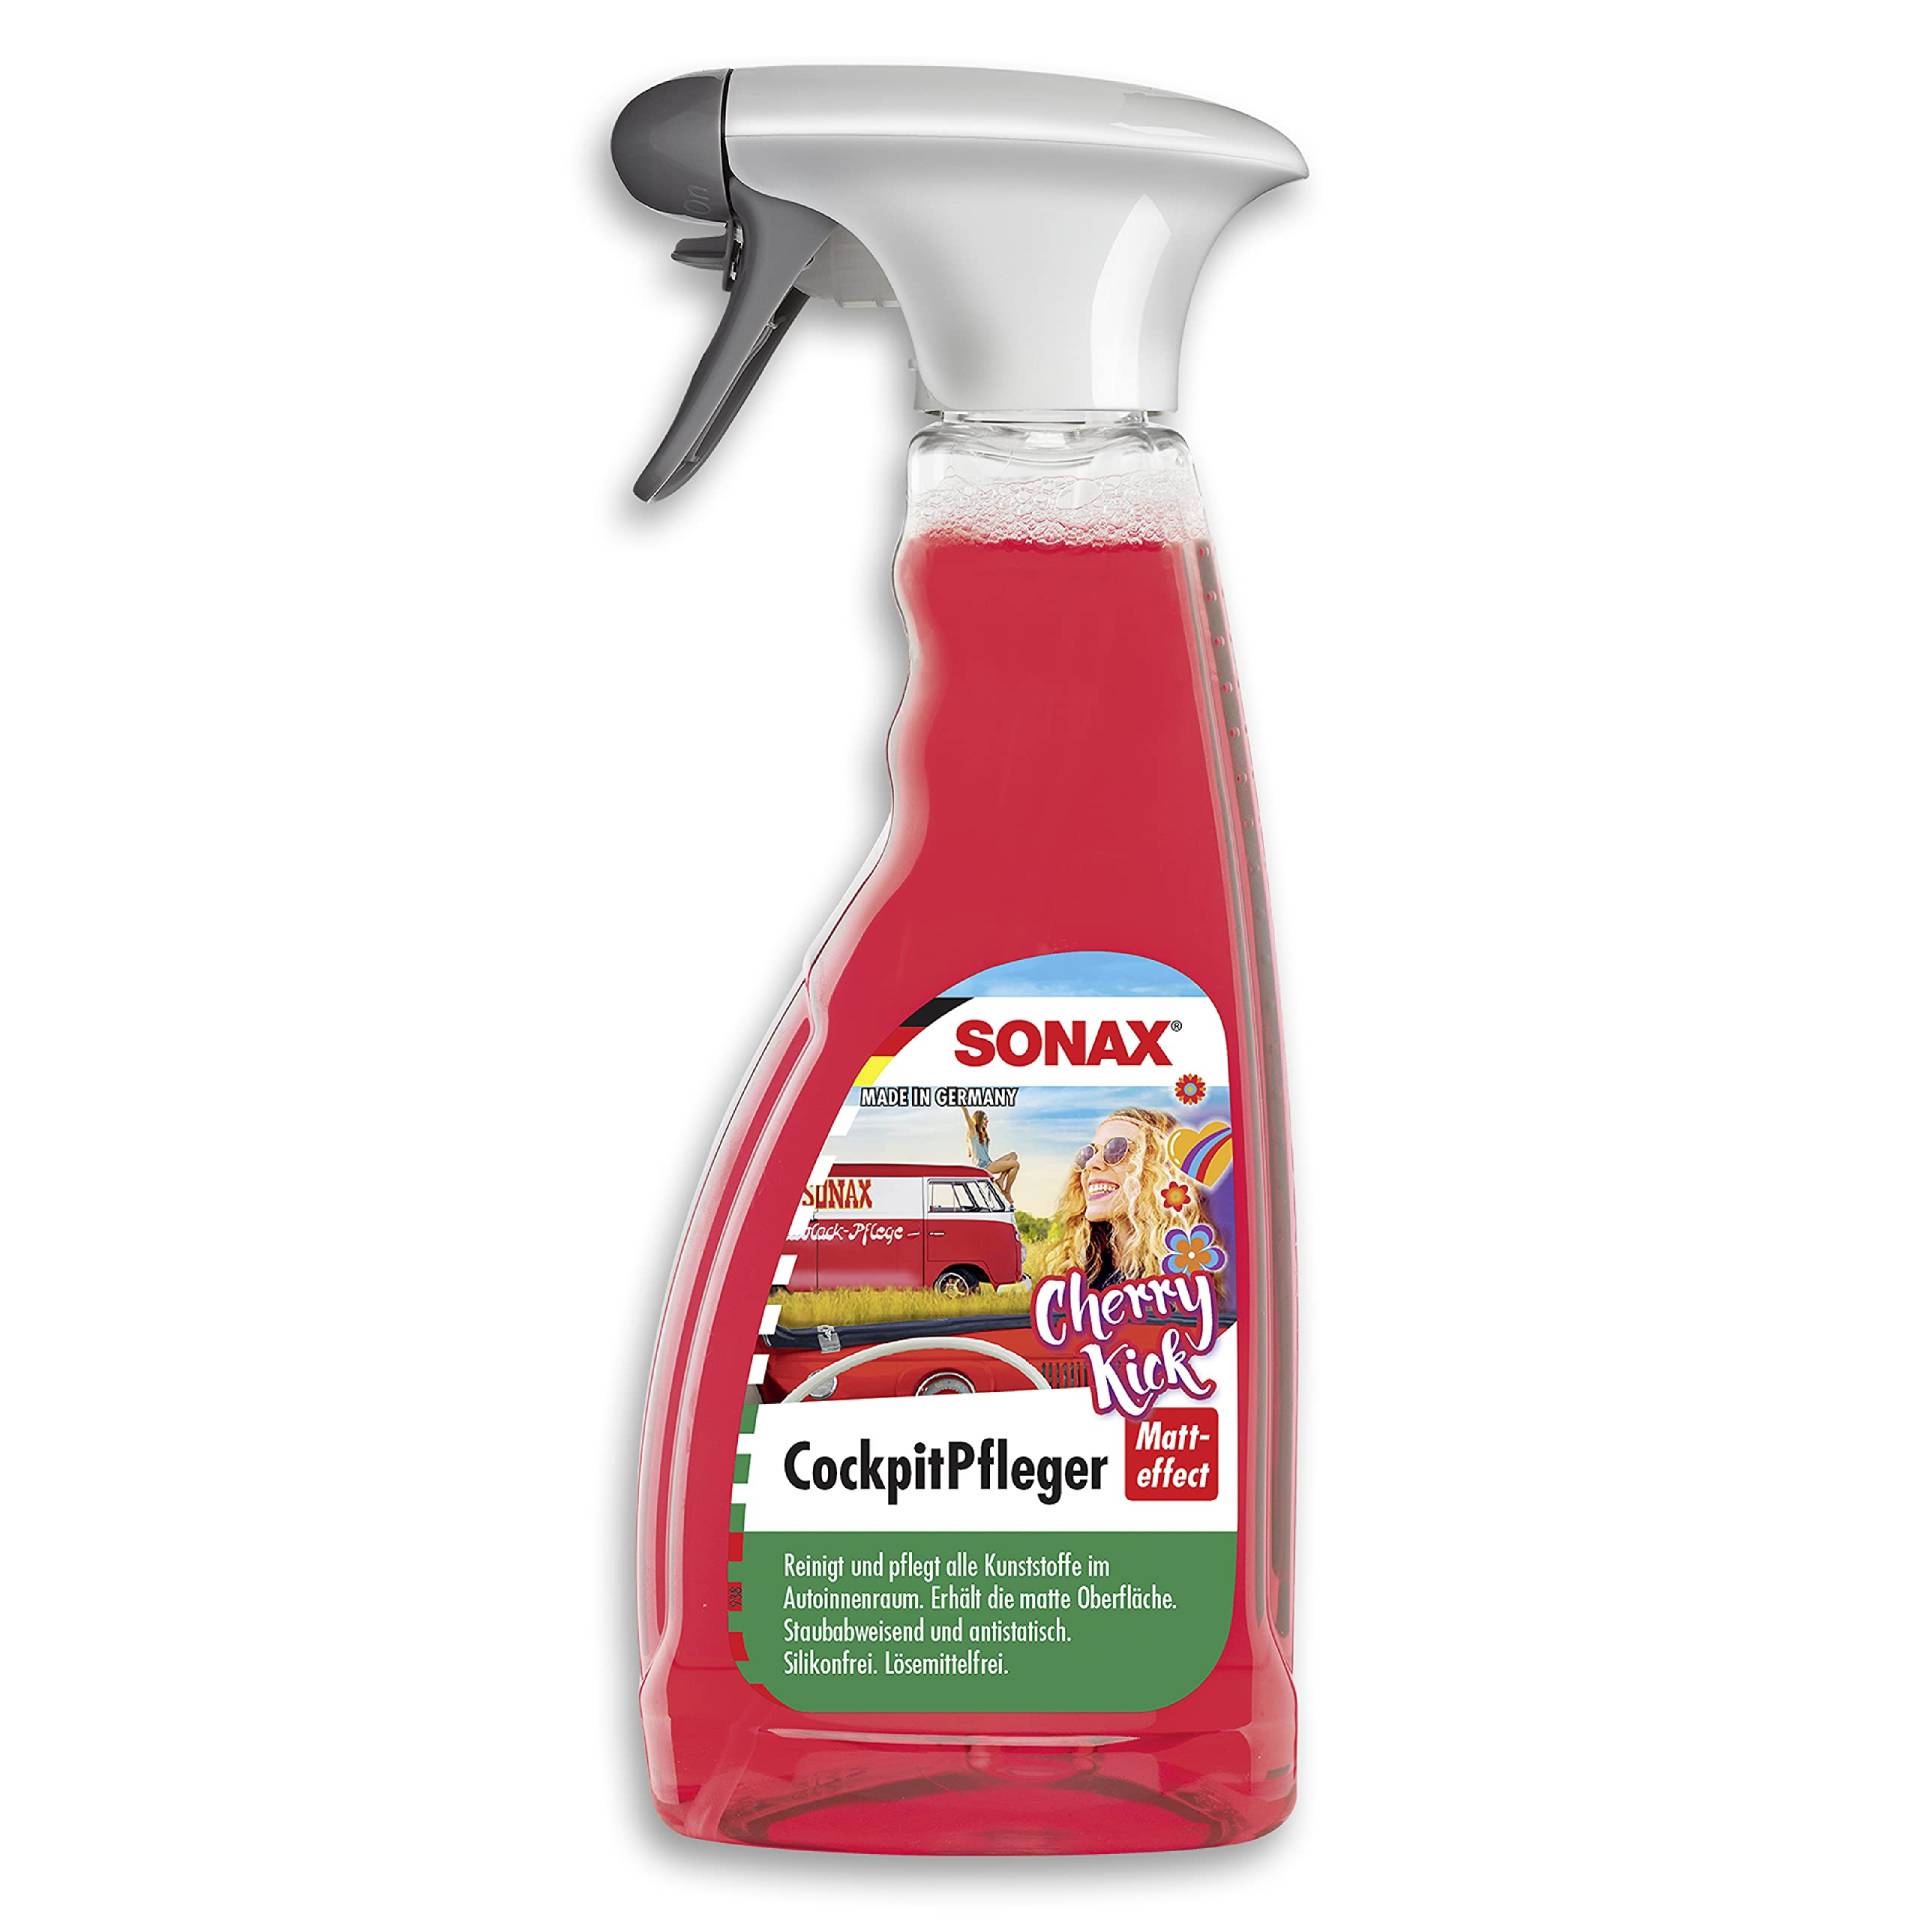 SONAX CockpitPfleger Matteffect Cherry Kick (500 ml) Reinigung und Pflege aller Kunststoffoberflächen im Autoinnenraum | Art-Nr. 03672410 von SONAX